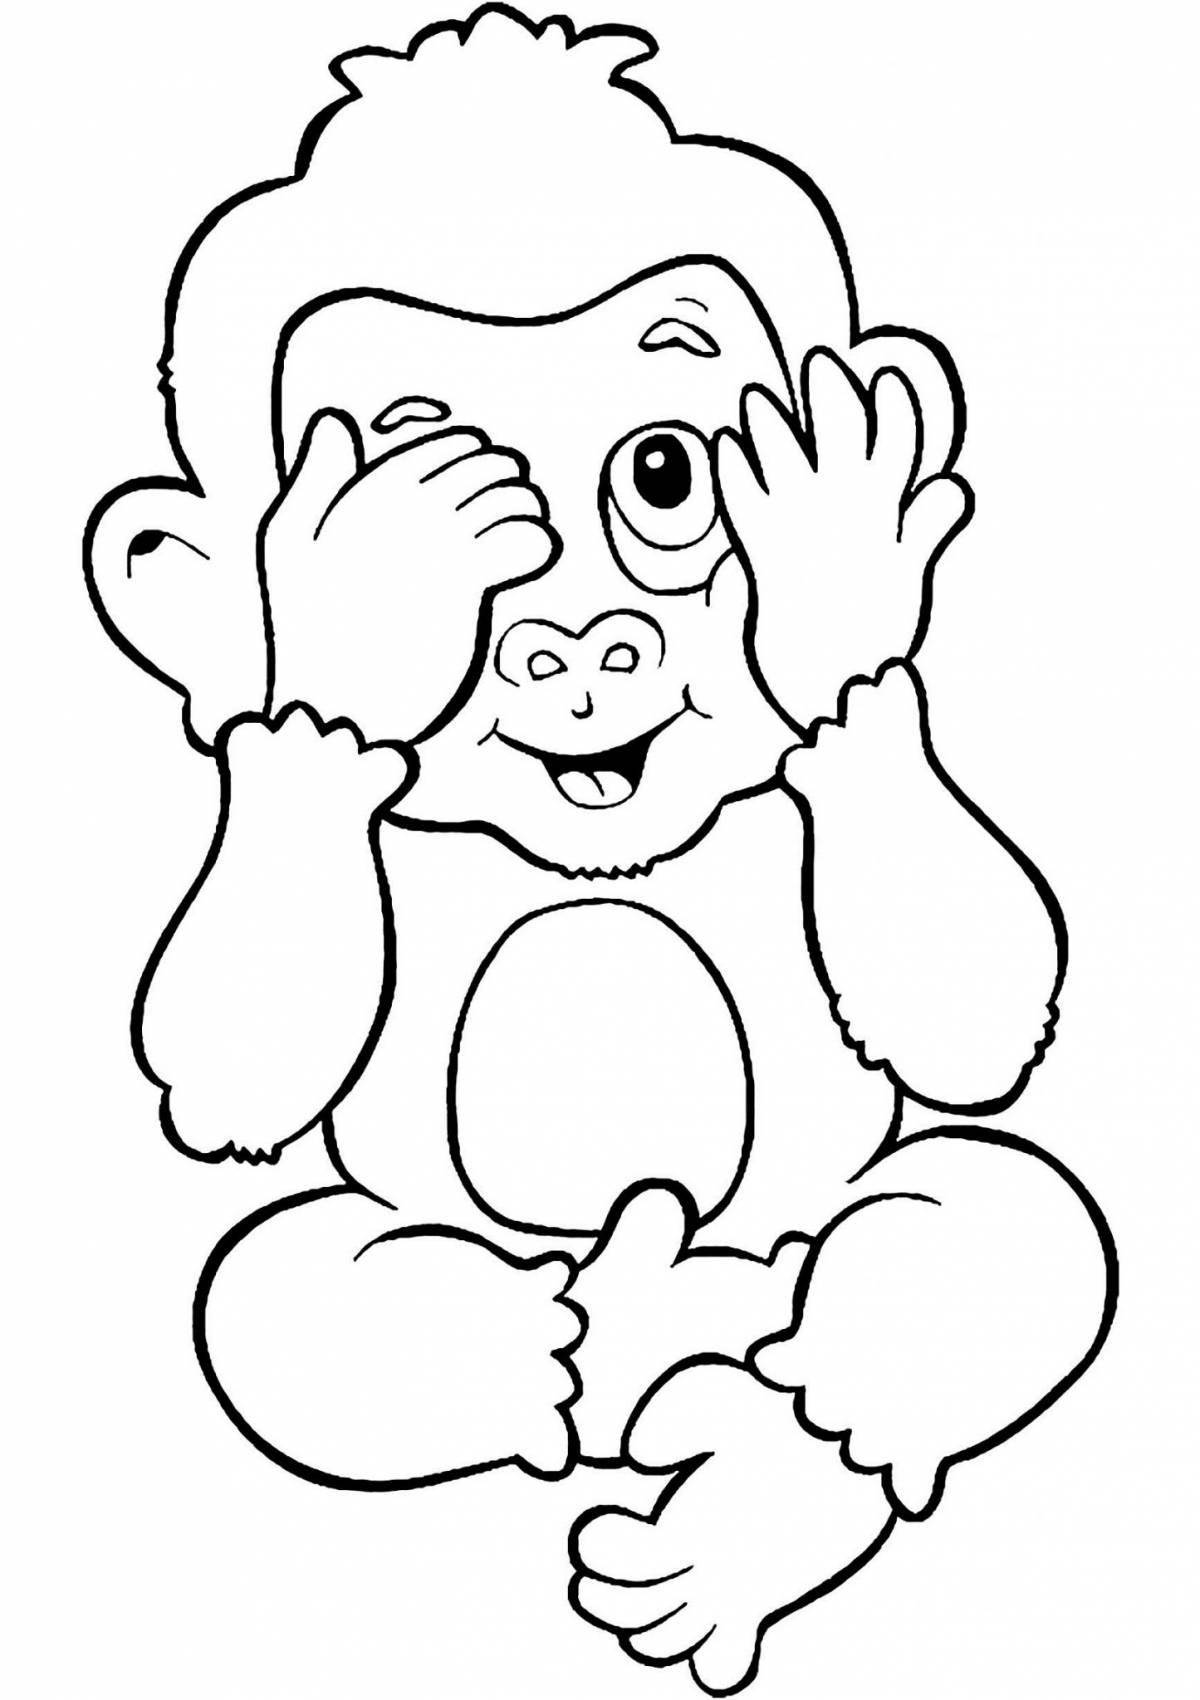 Экспрессивная раскраска обезьяна для детей